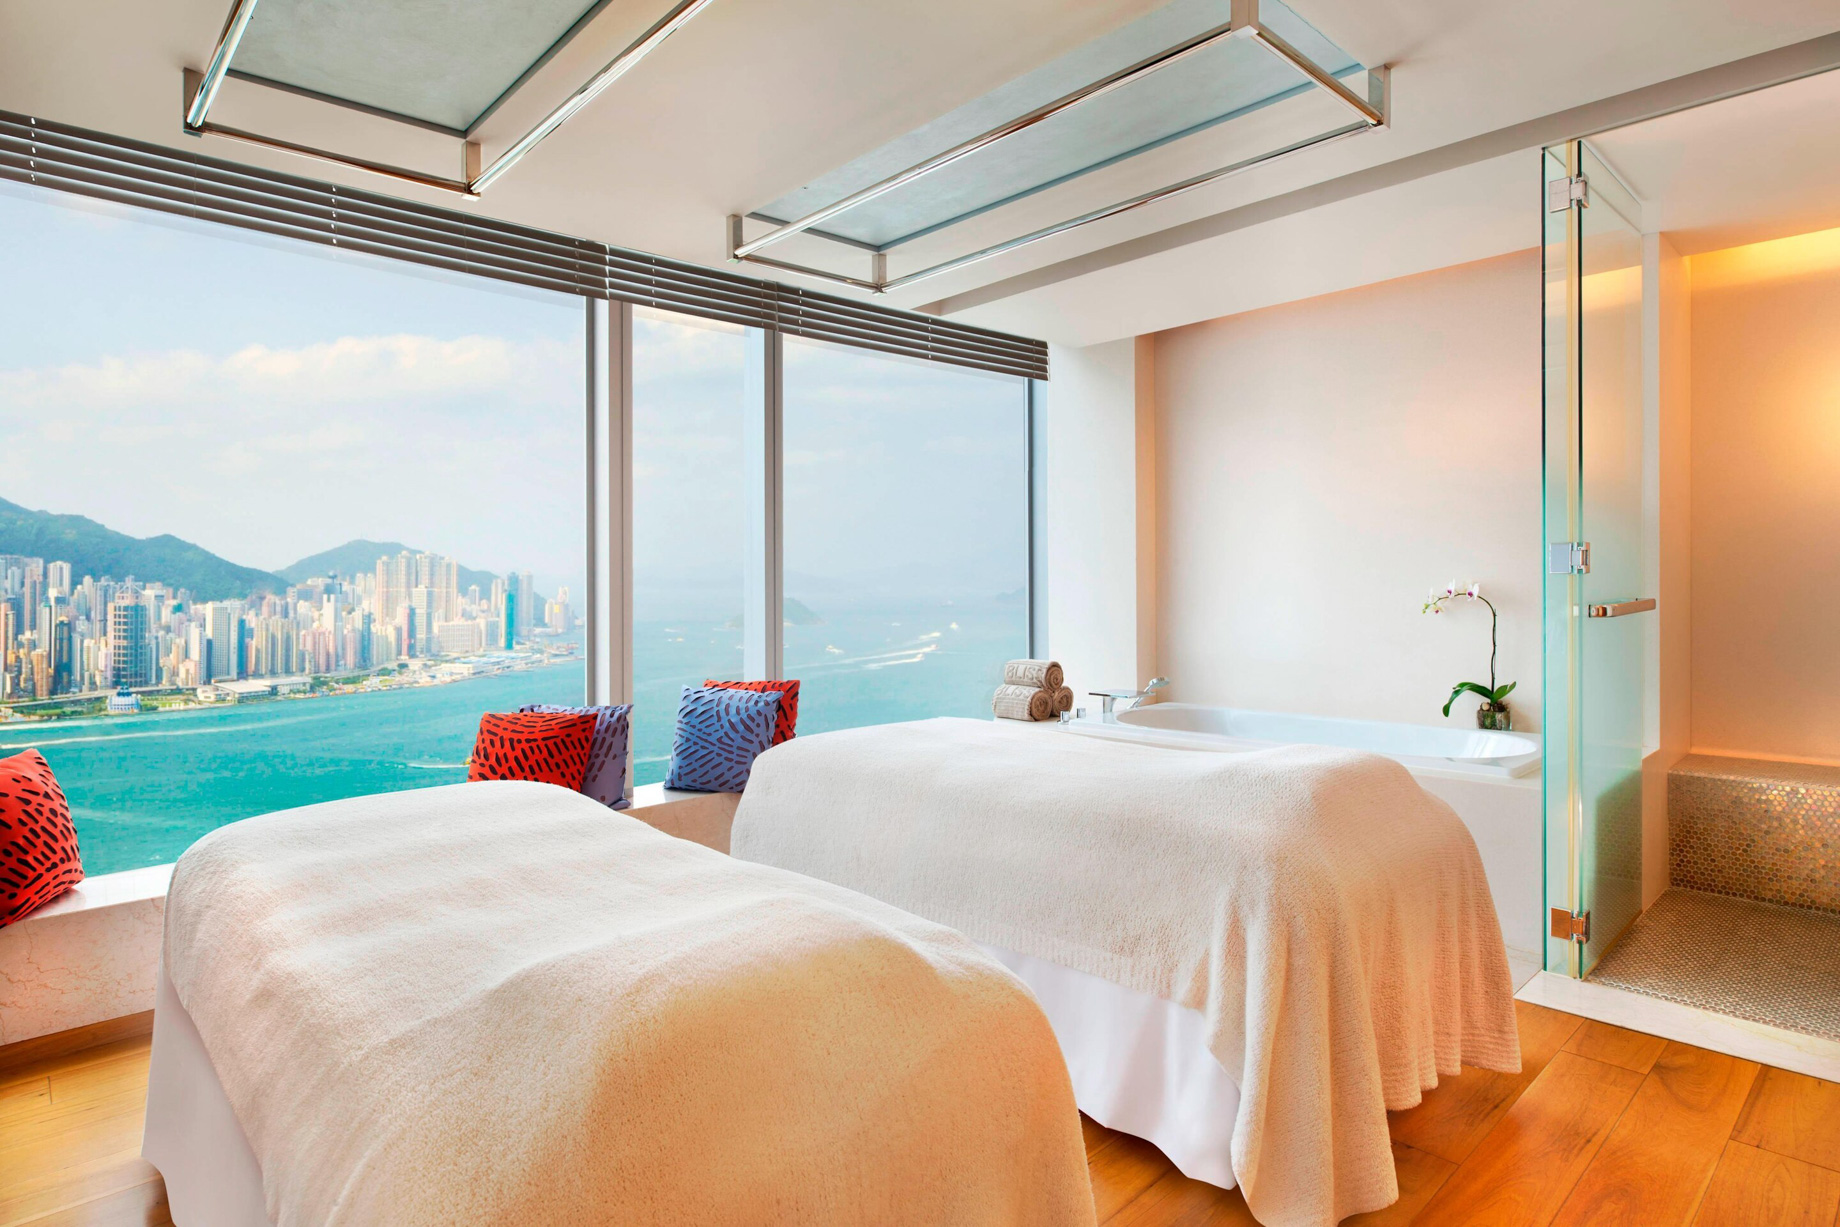 W Hong Kong Hotel - Hong Kong - Bliss Spa Treatment Room